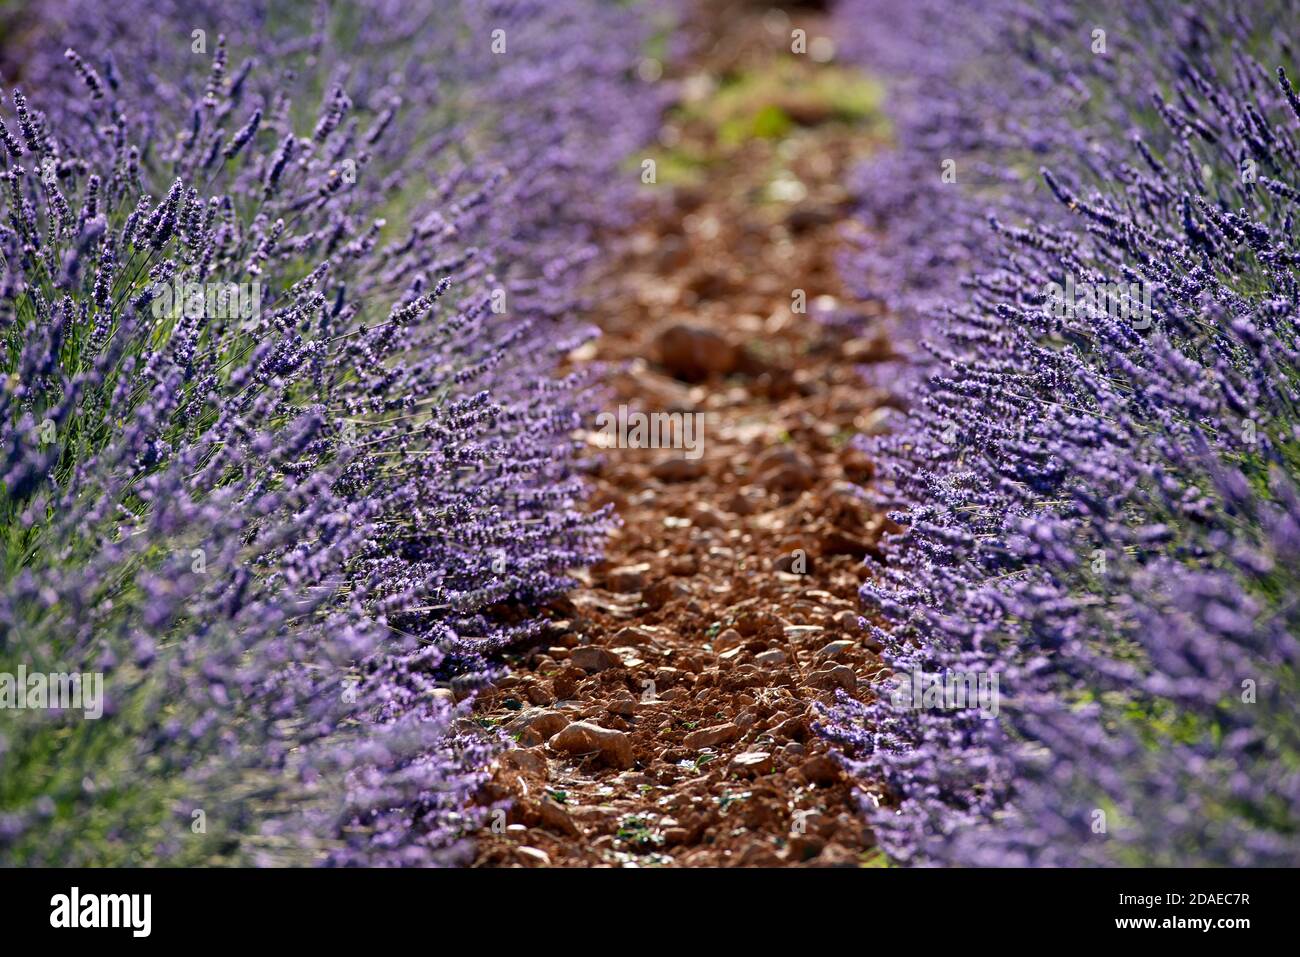 France, Alpes de Haute Provence, Plateau de Valensole, lavender fields Stock Photo